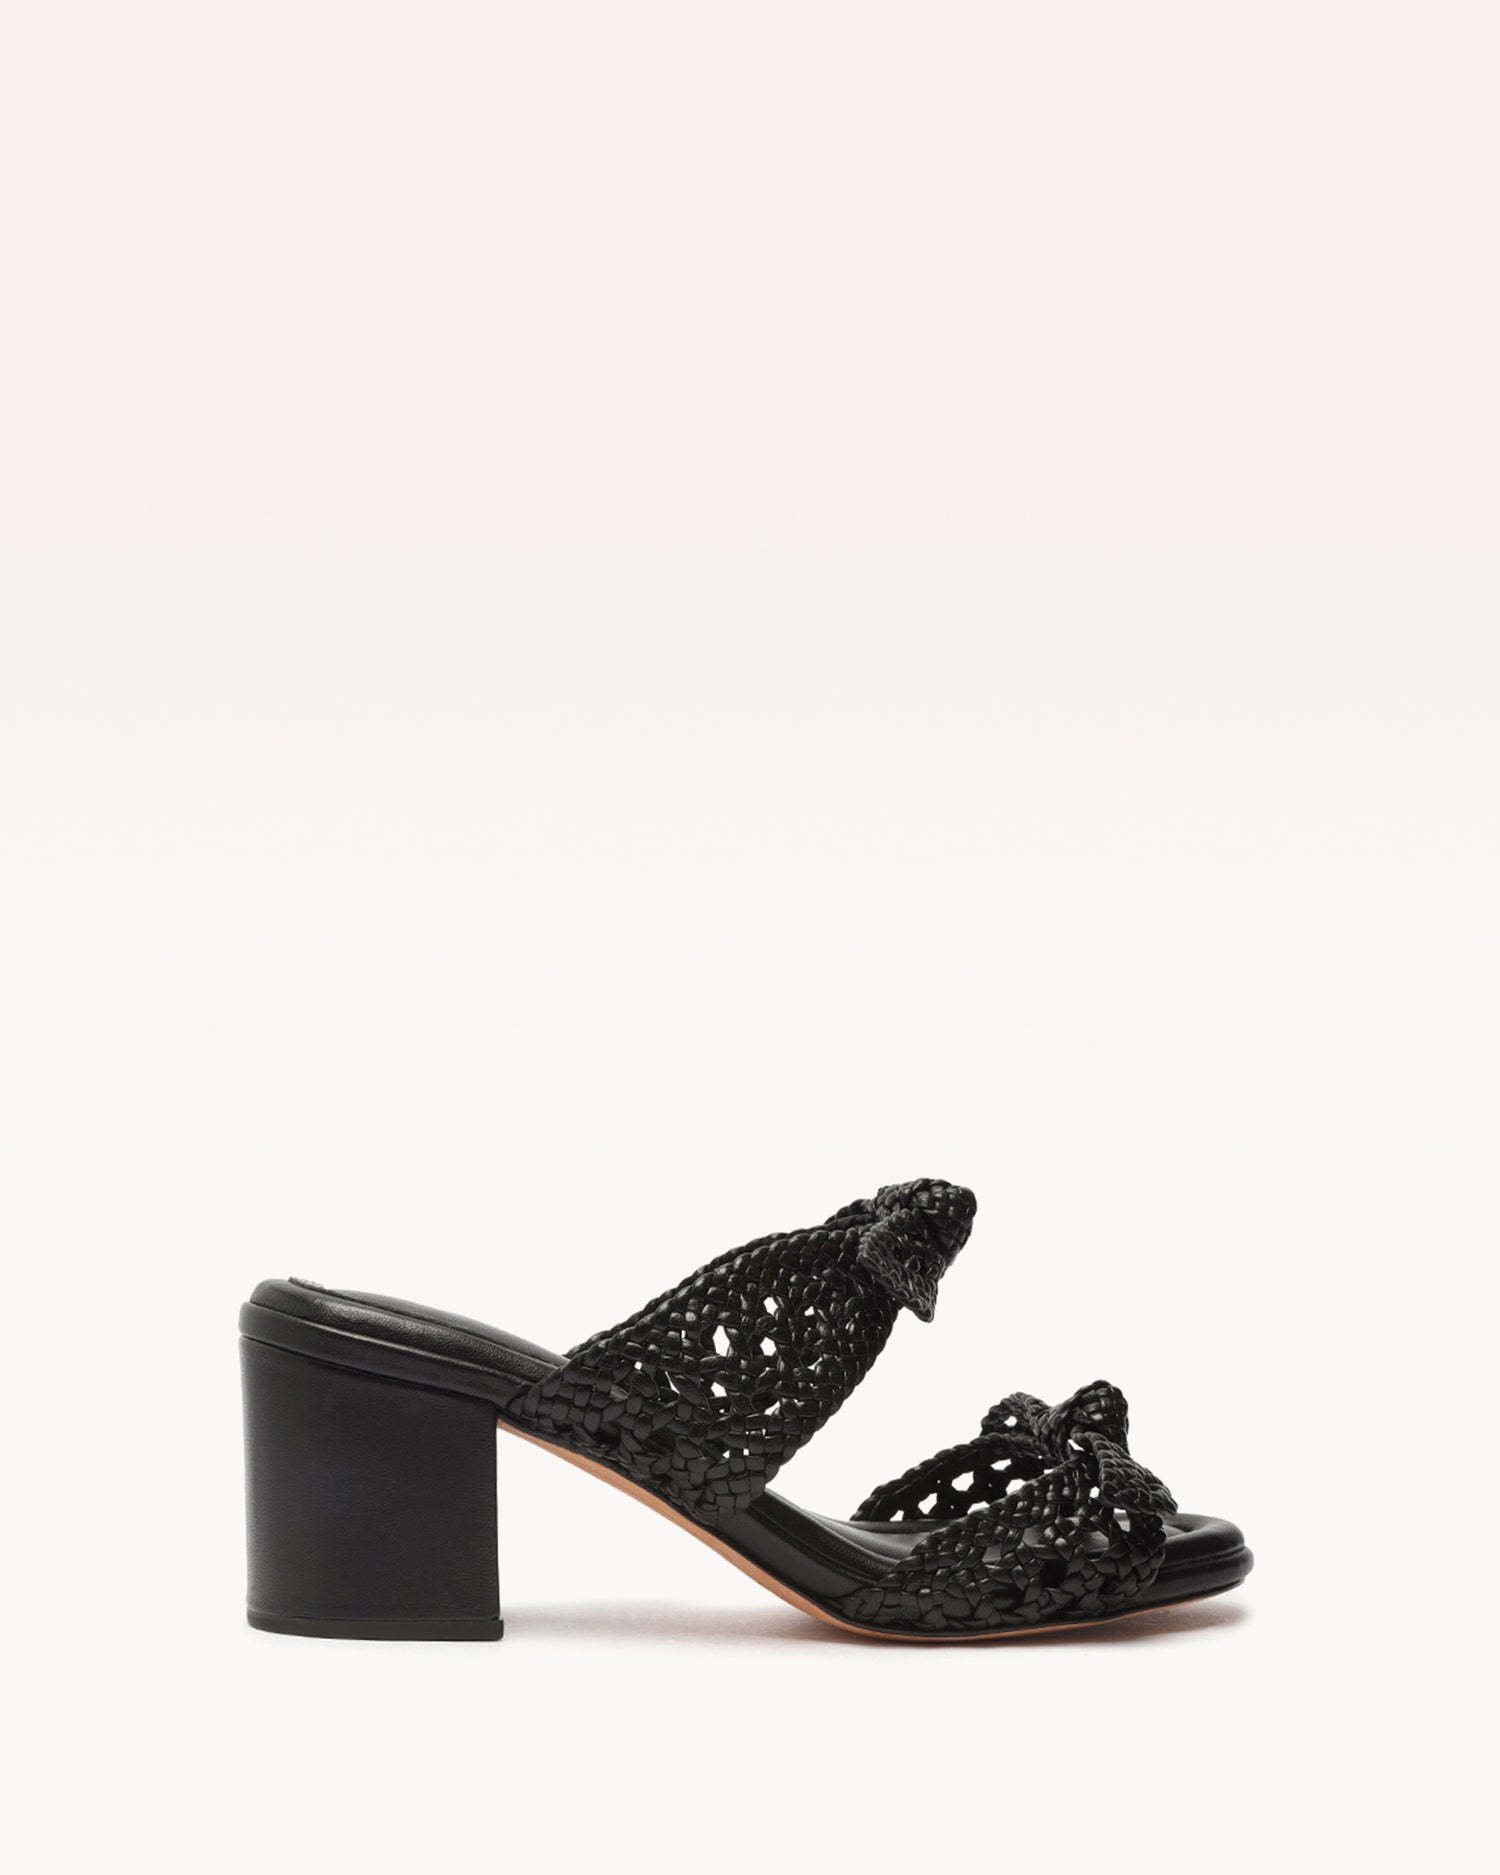 Clarita Intreccio 60 Doppia Soletta Black Sandals S/23 35 Black Nappa Leather